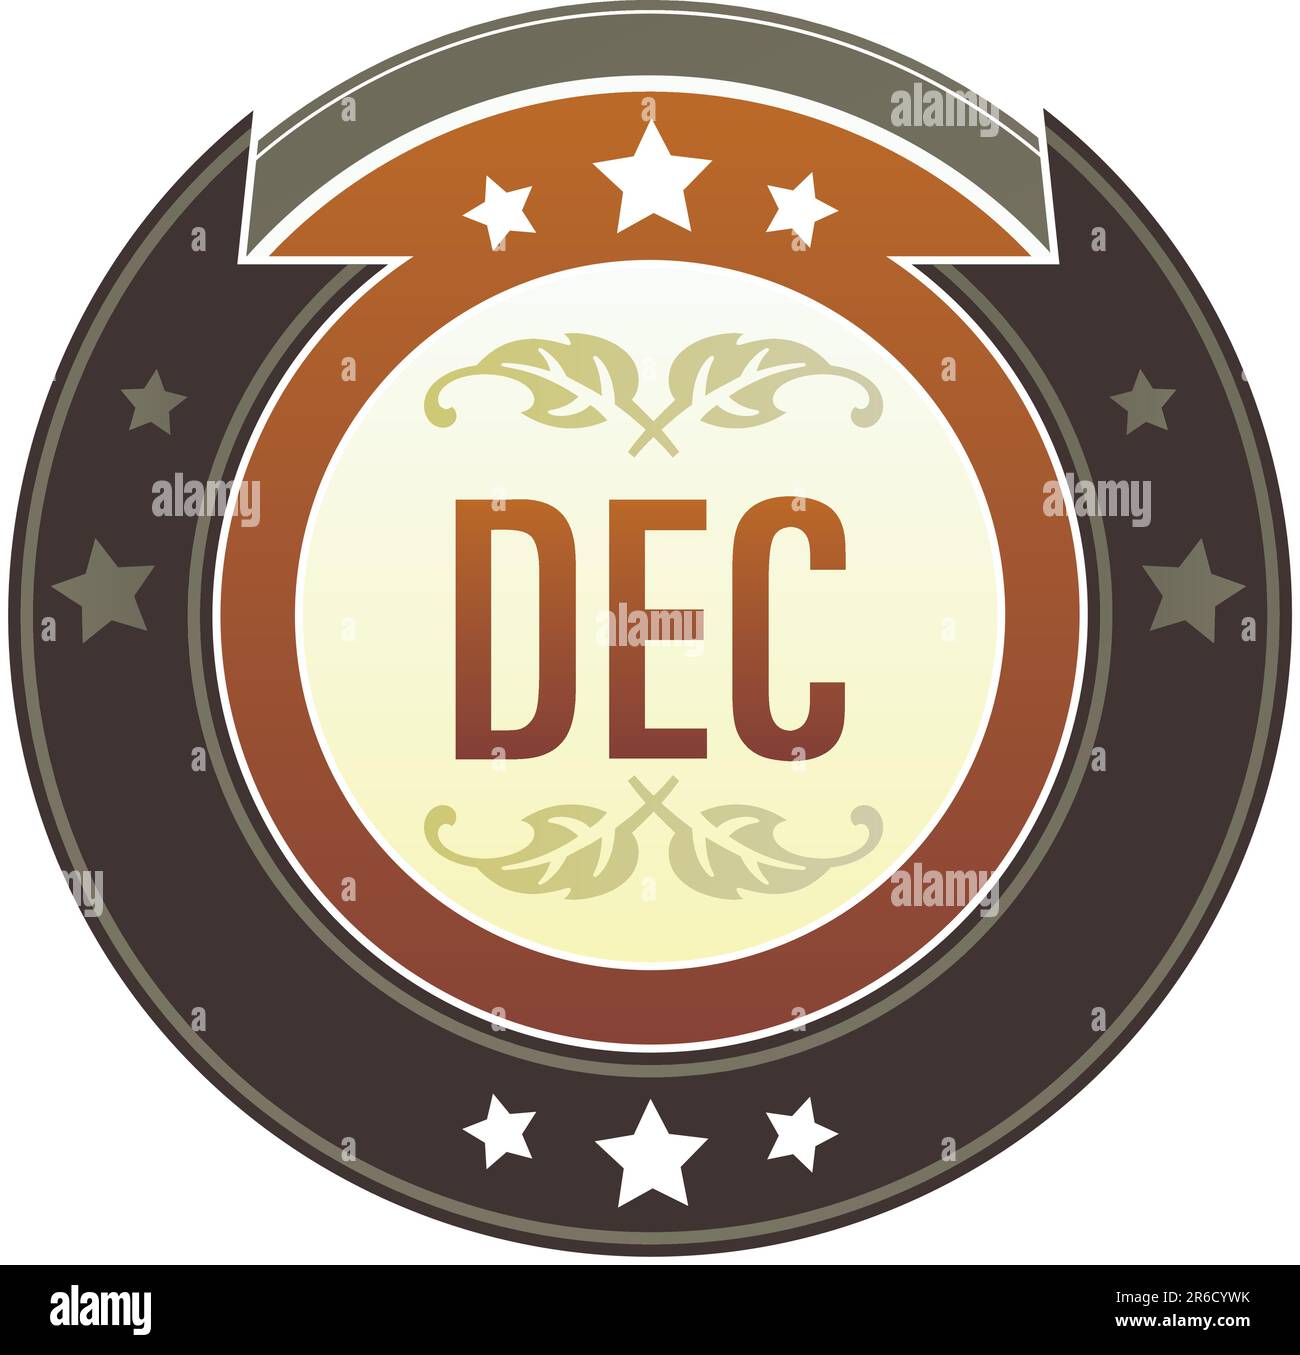 Kalendersymbol für Dezember Monat auf rundem rot-braunem kaiserlichen Vektorknopf mit Sternakzenten geeignet für die Verwendung auf der Website, in Printmedien und Werbespots ... Stock Vektor